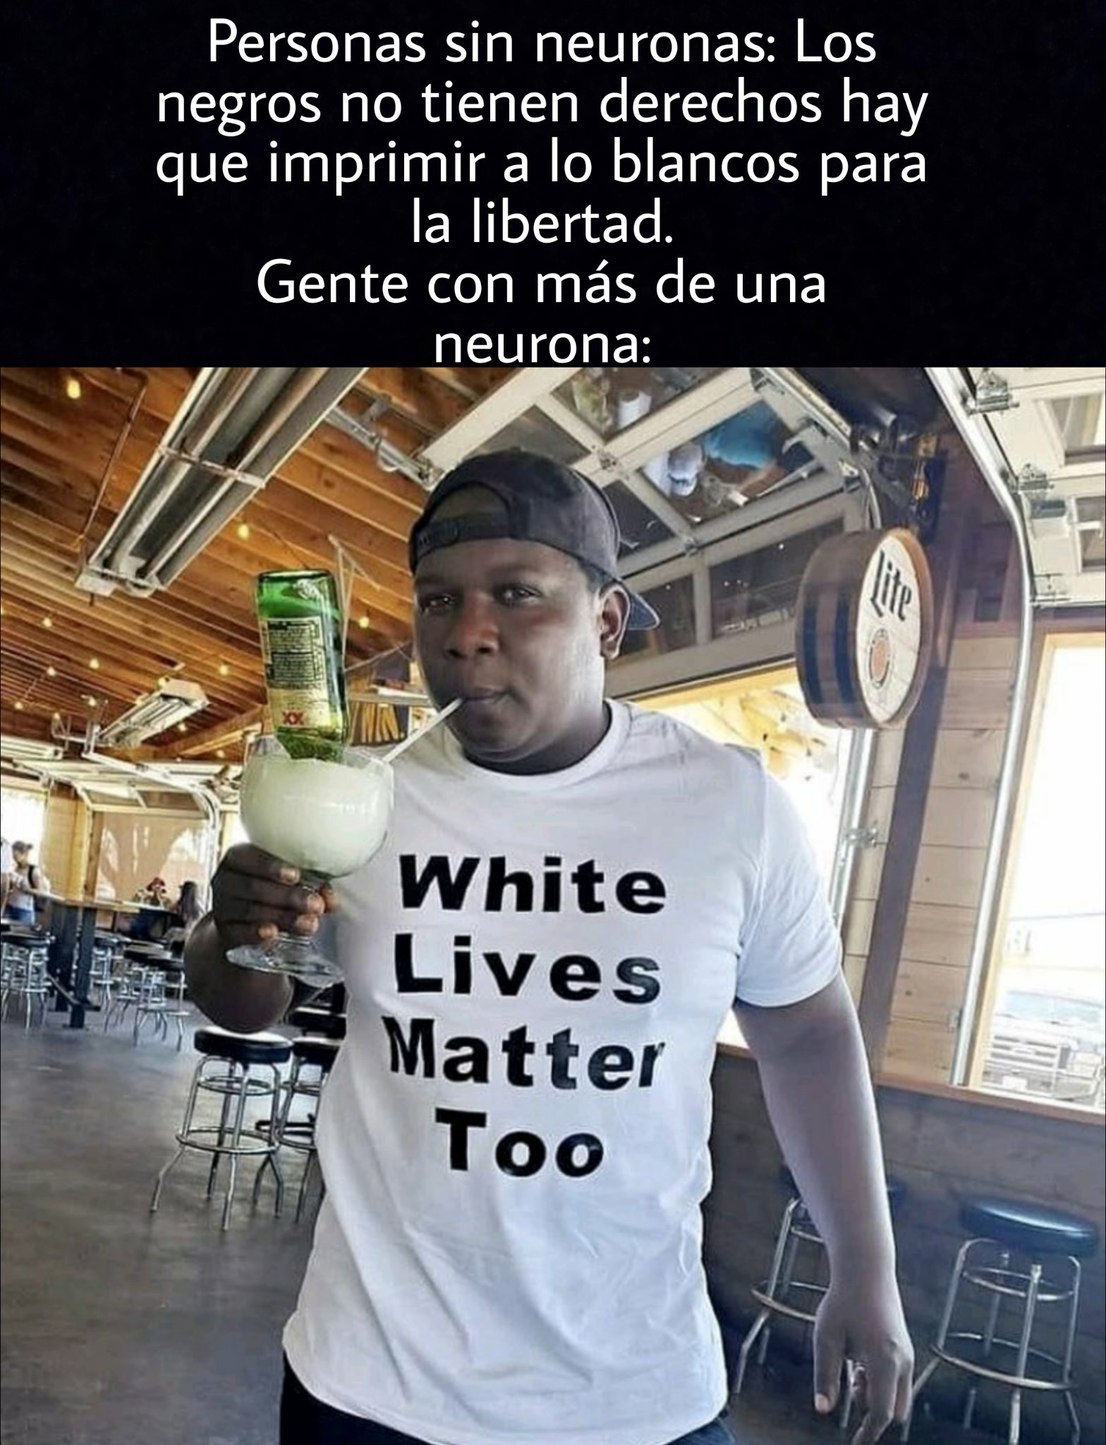 White lives matter to - meme